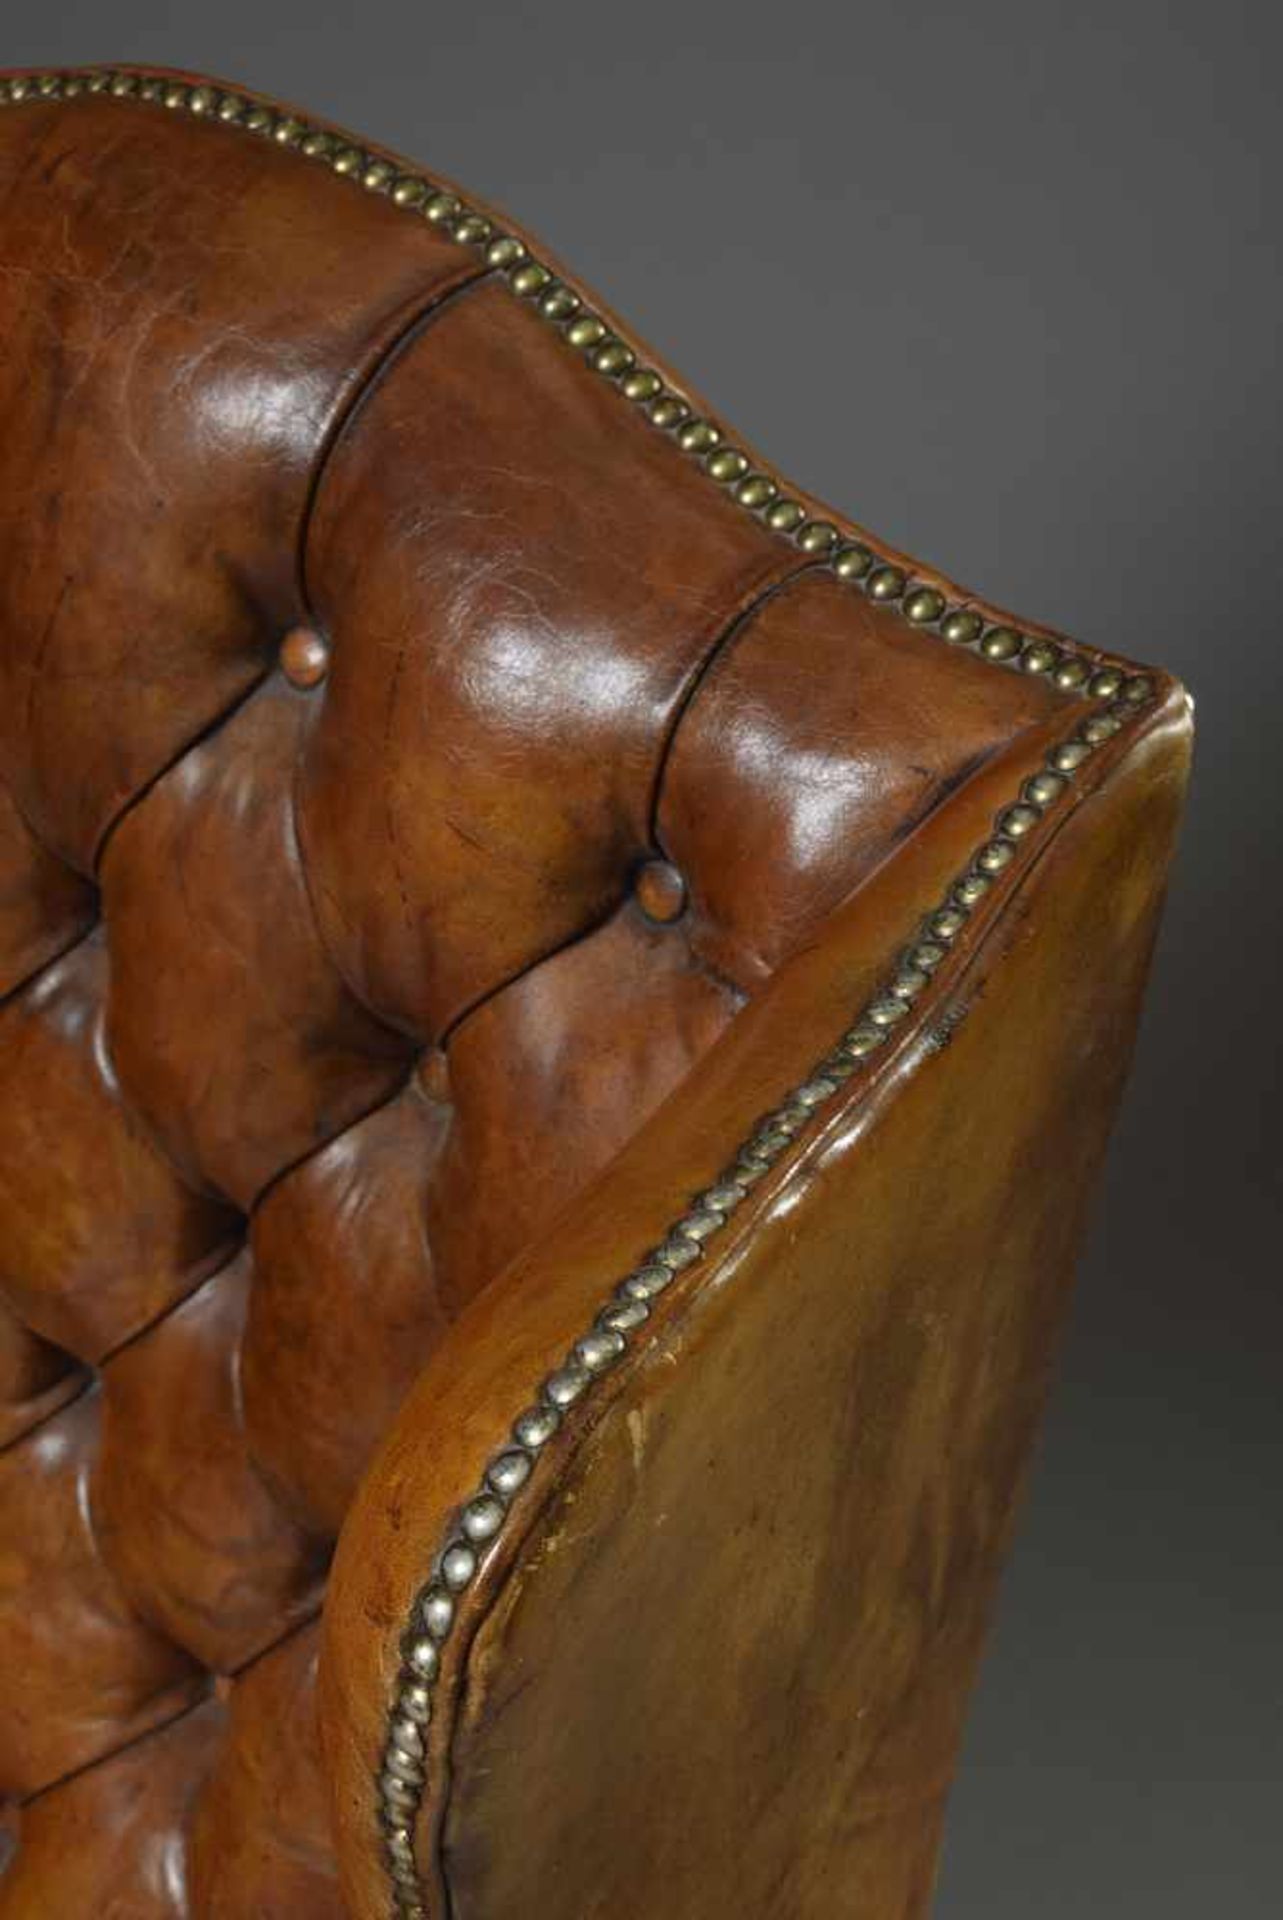 Chesterfield Ohrensessel mit brauen Lederbezug, H. 46/100cmChesterfield wing chair with brown - Bild 4 aus 4